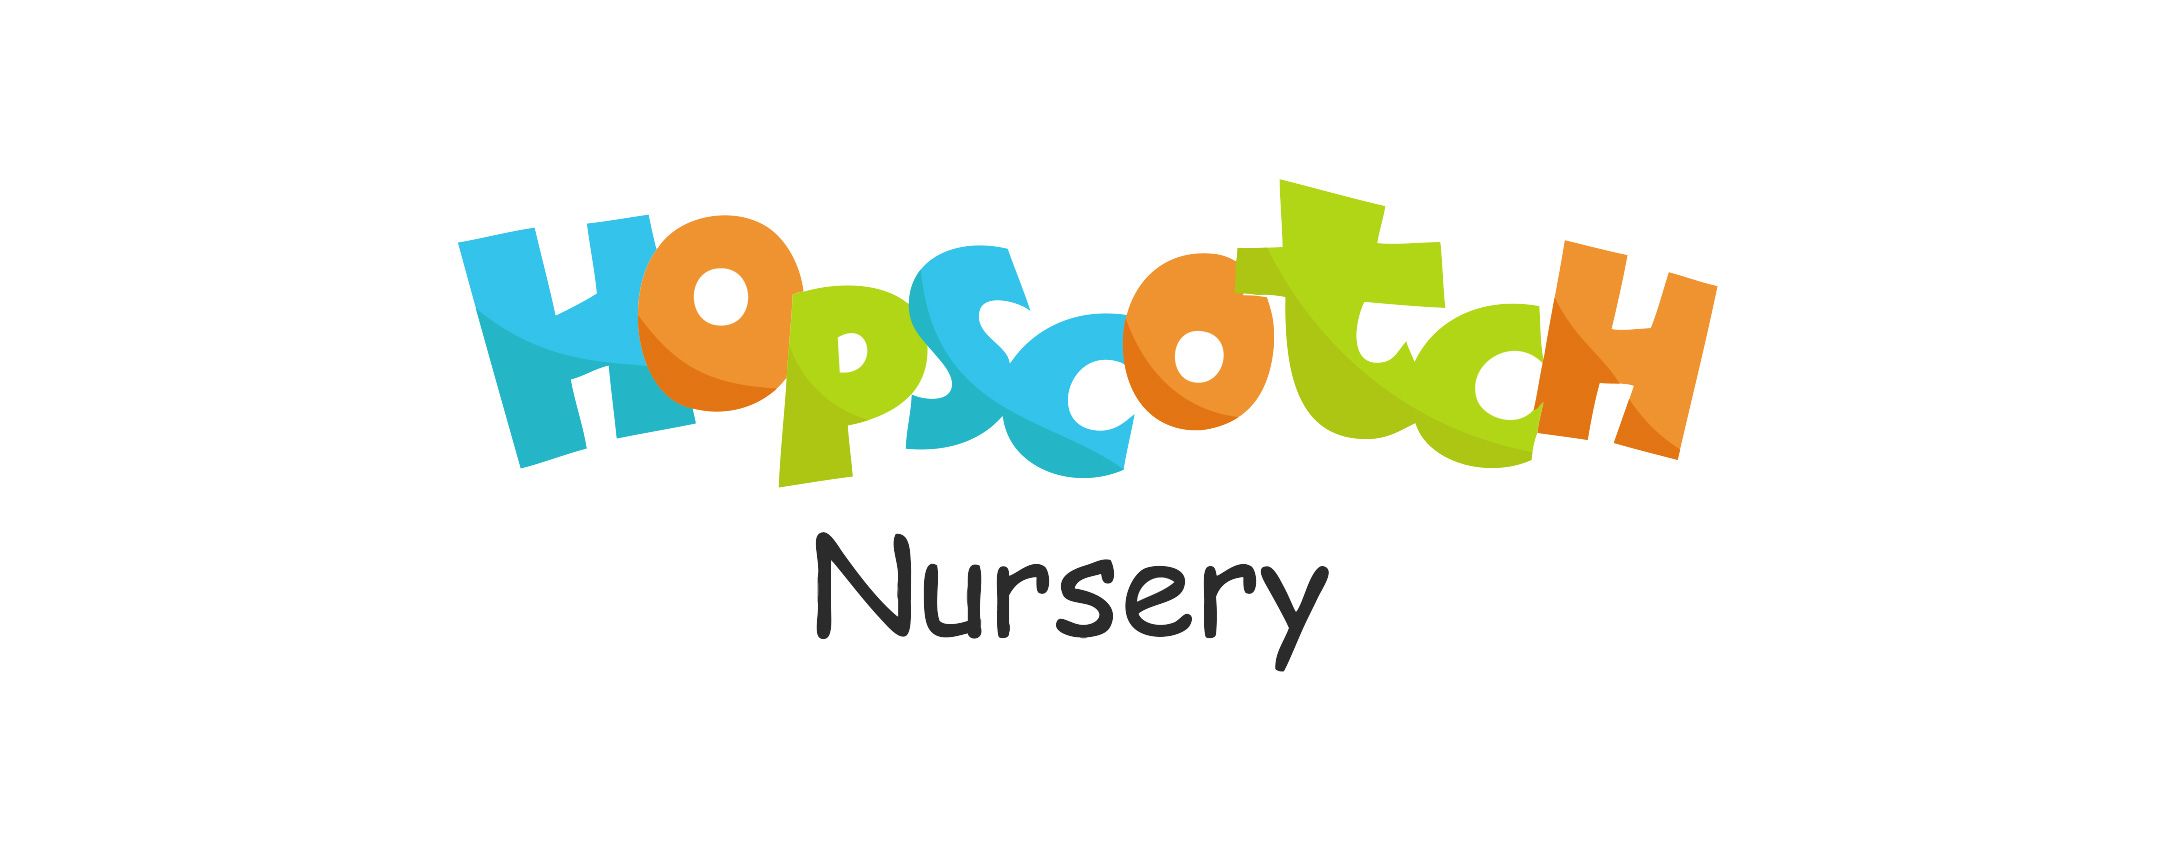 Hopscotch Nursery